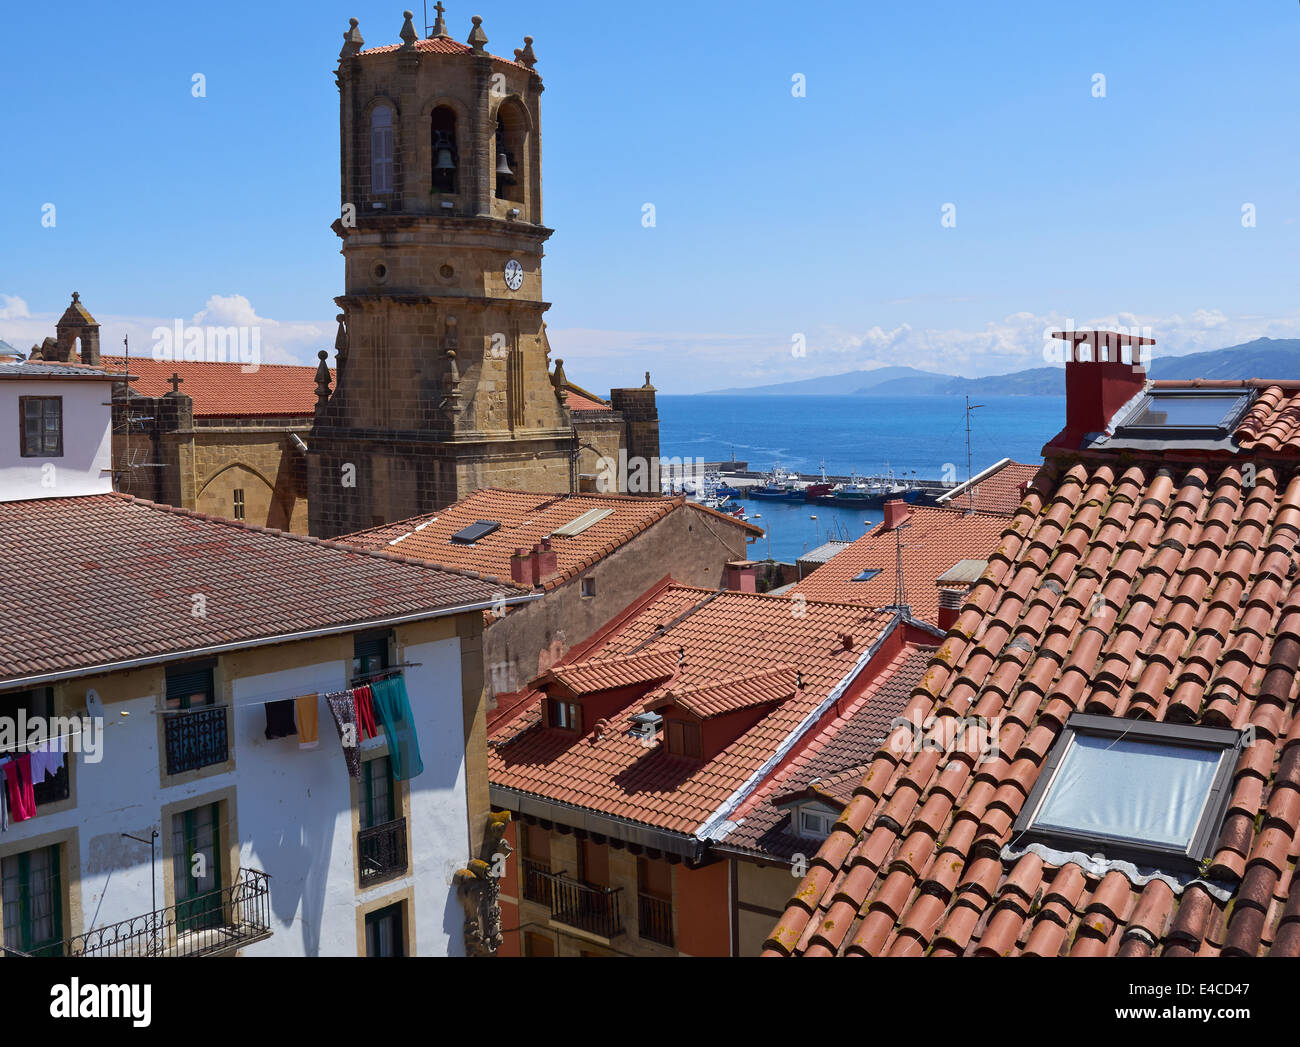 Getaria, Gipuzkoa, Paesi Baschi, Spagna. I tetti delle case del centro storico villaggio di pescatori. Foto Stock